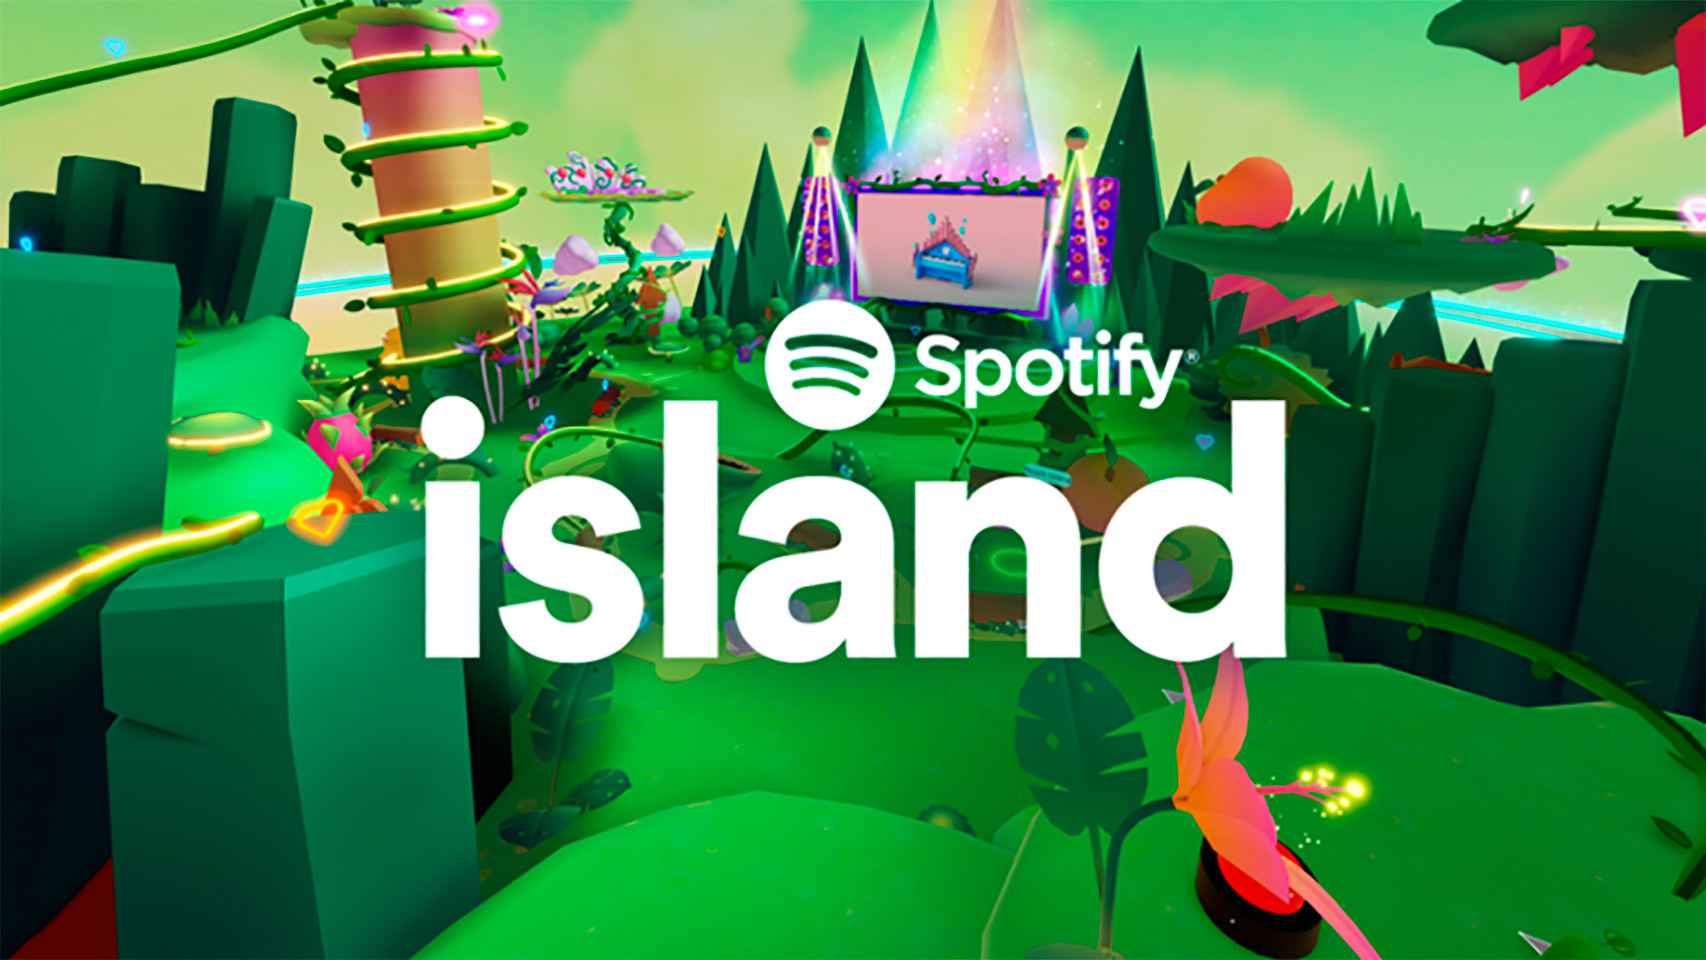 Isla Spotify es el nuevo espacio virtual del servicio de streaming